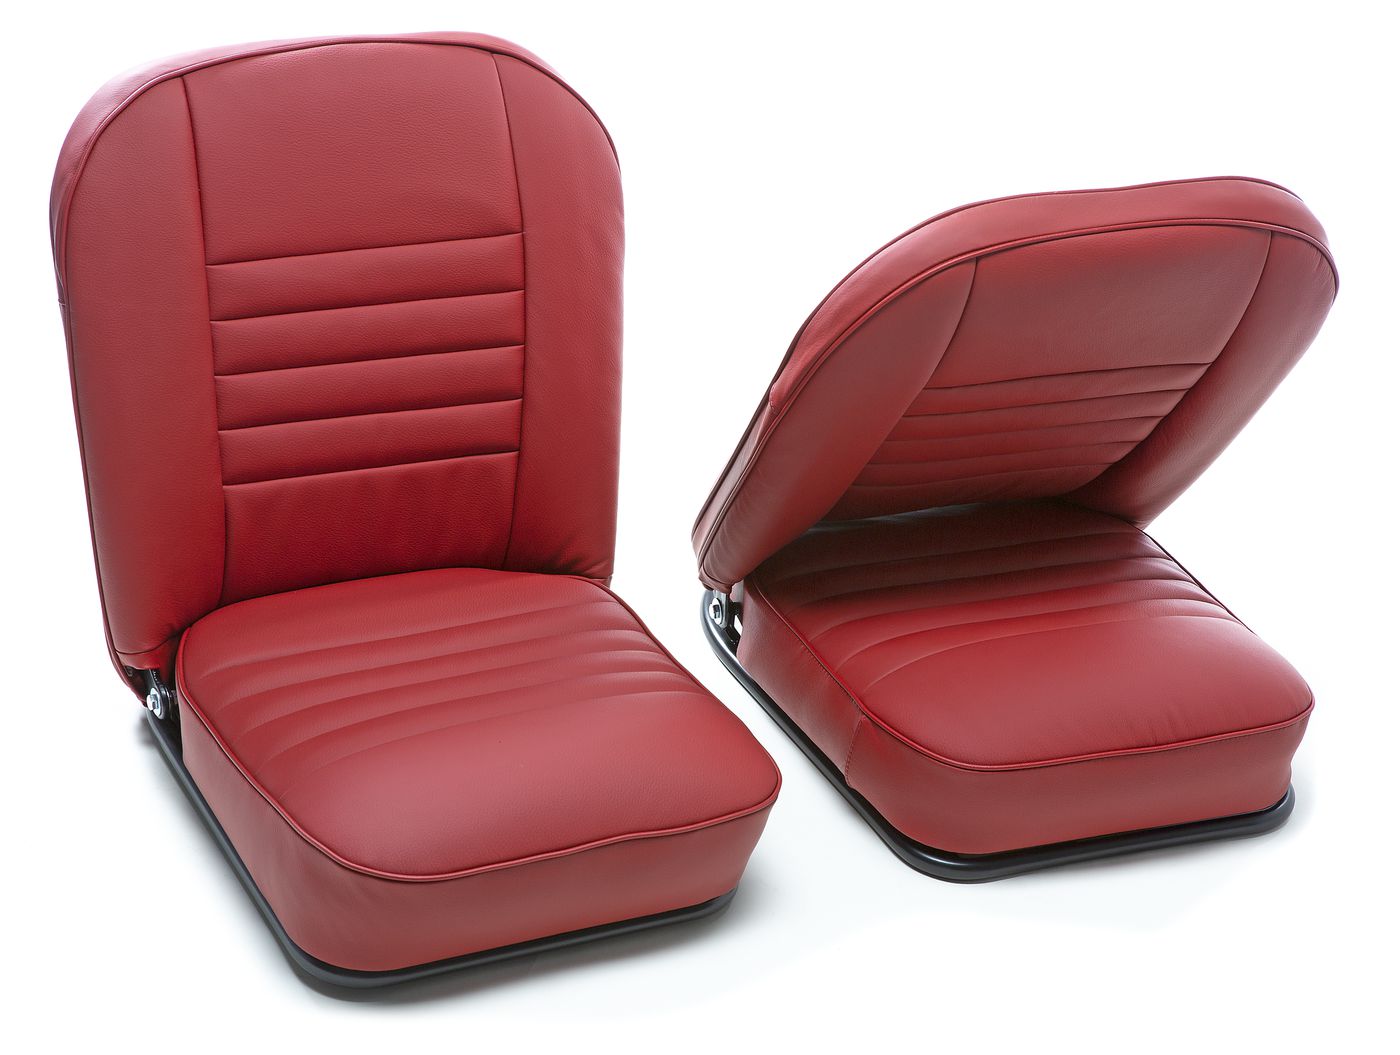 Ledersitze
Leather seats
Sièges en cuir
Siedzenie
Lederen autos